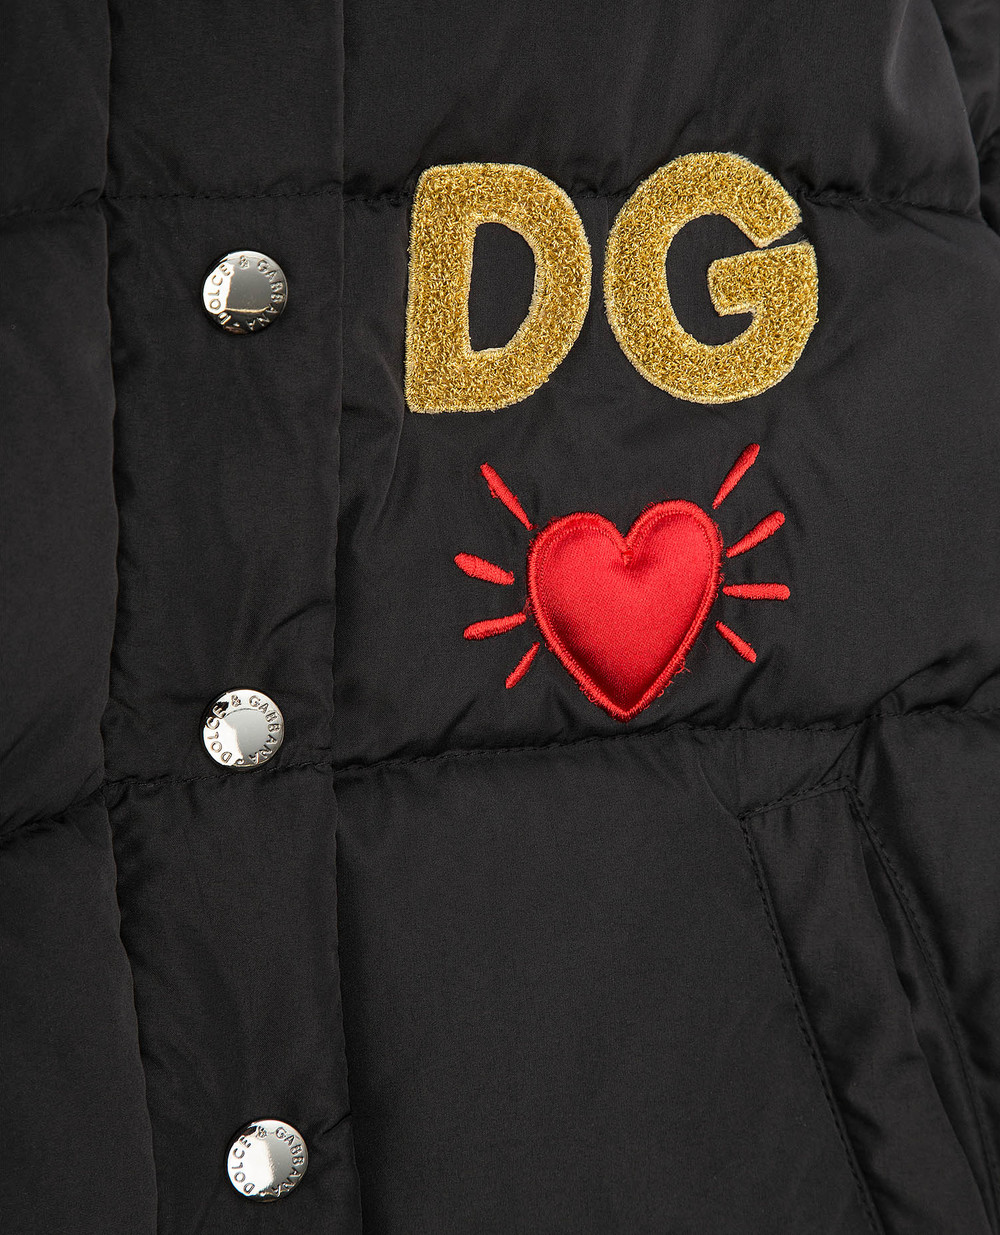 Пуховик Dolce&Gabbana Kids L5JBII-G7TVA-S, черный цвет • Купить в интернет-магазине Kameron